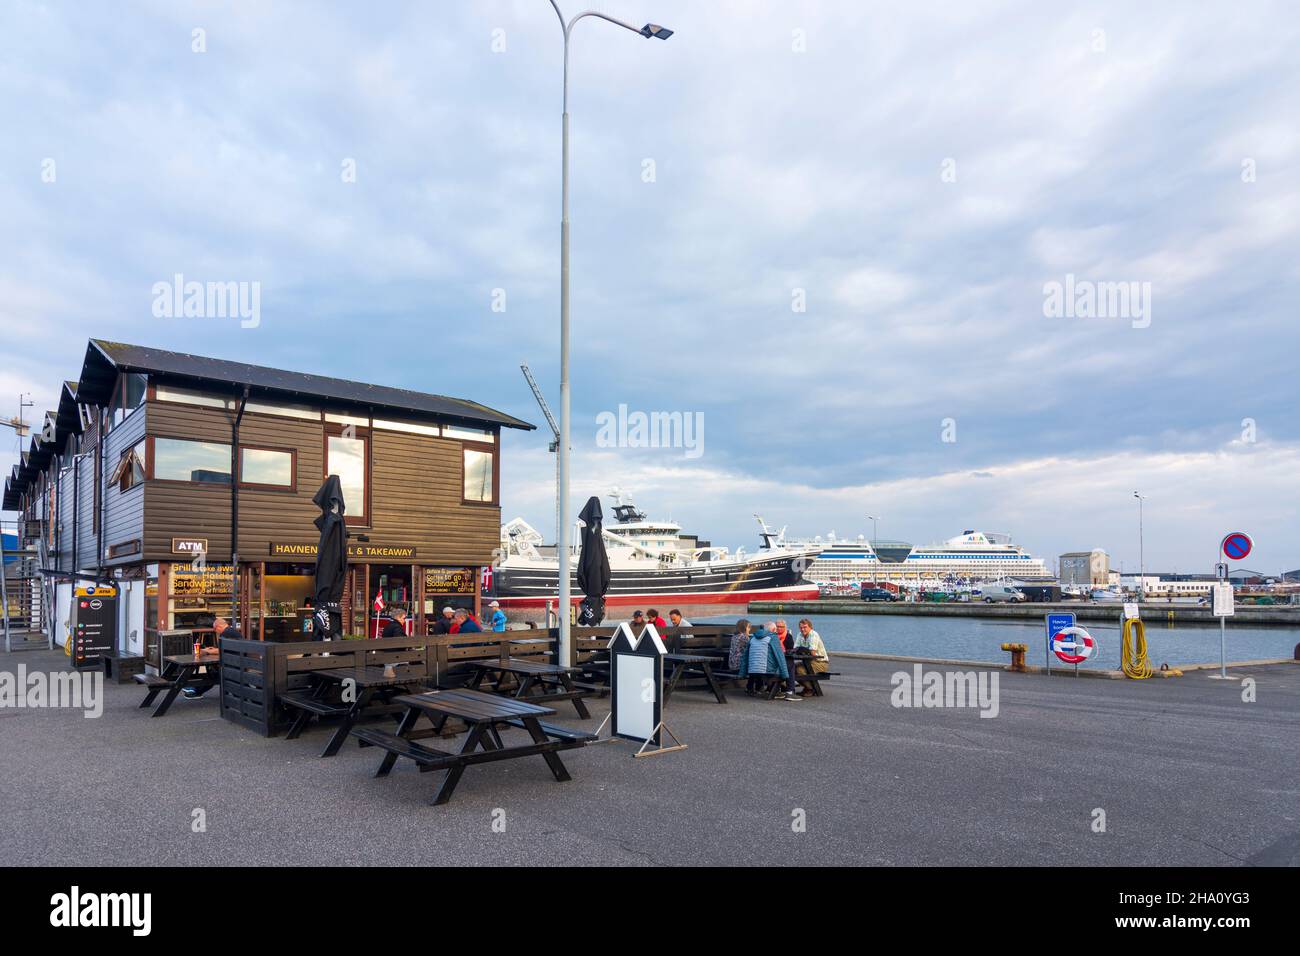 Indsigt barmhjertighed hvidløg Skagen harbour restaurant hi-res stock photography and images - Alamy